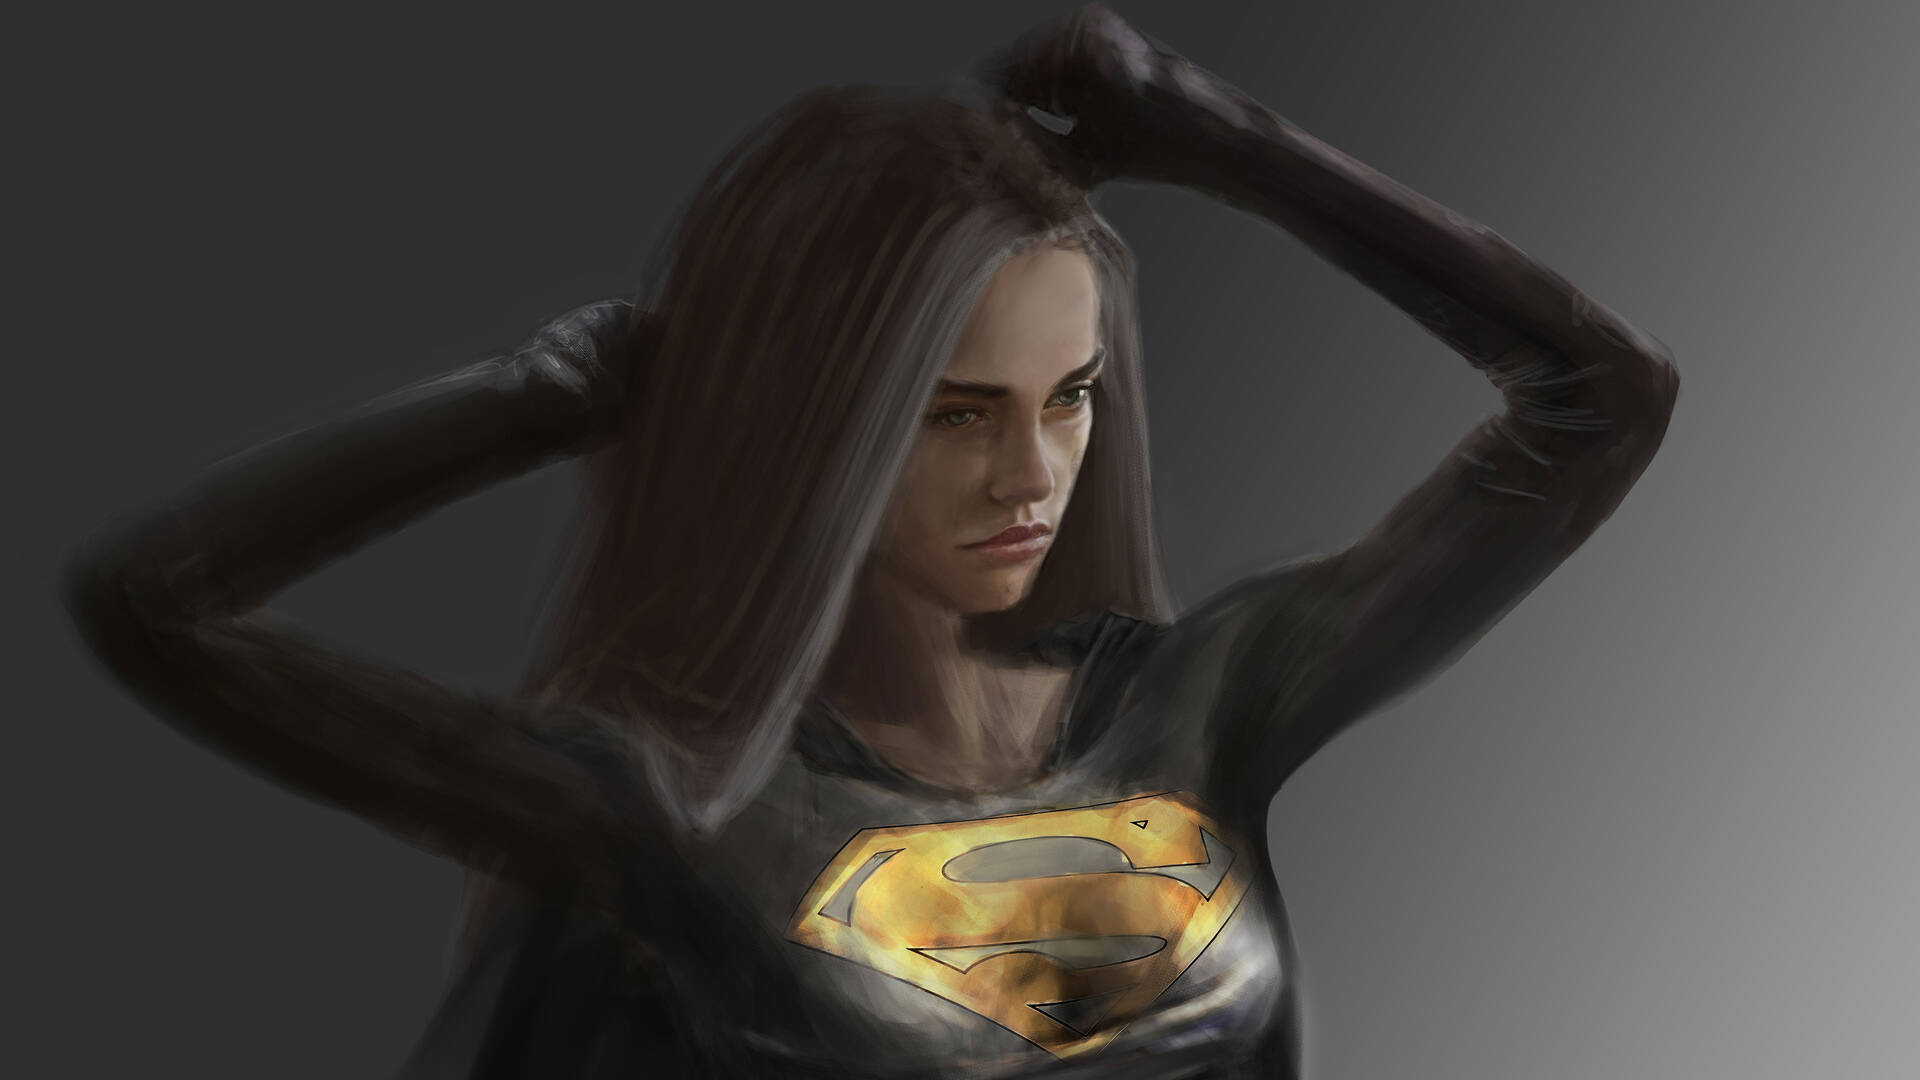 Black Supergirl Artwork Background